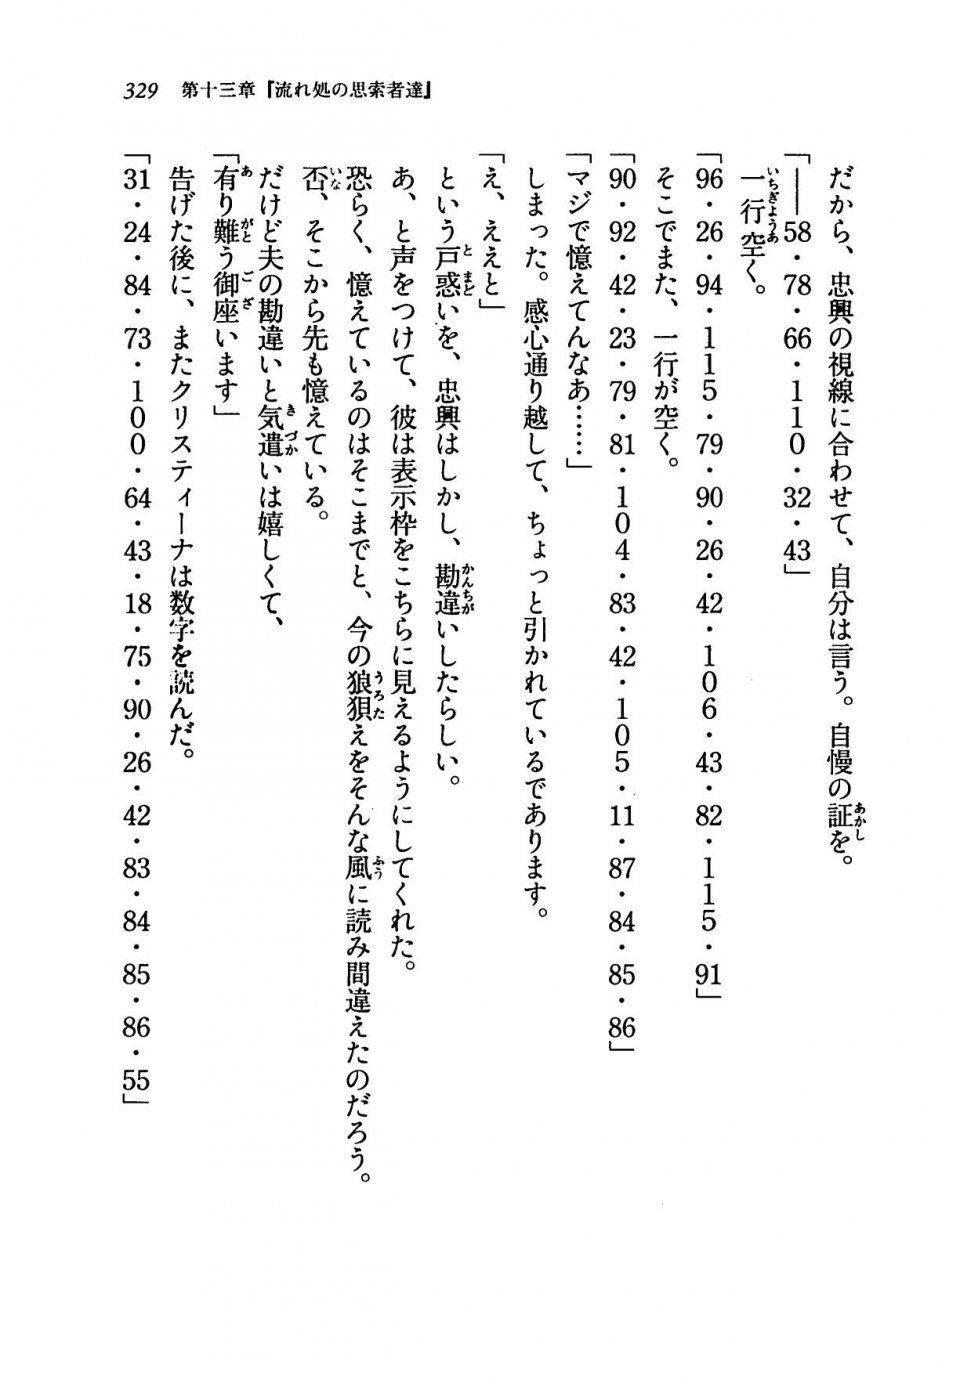 Kyoukai Senjou no Horizon LN Vol 19(8A) - Photo #329